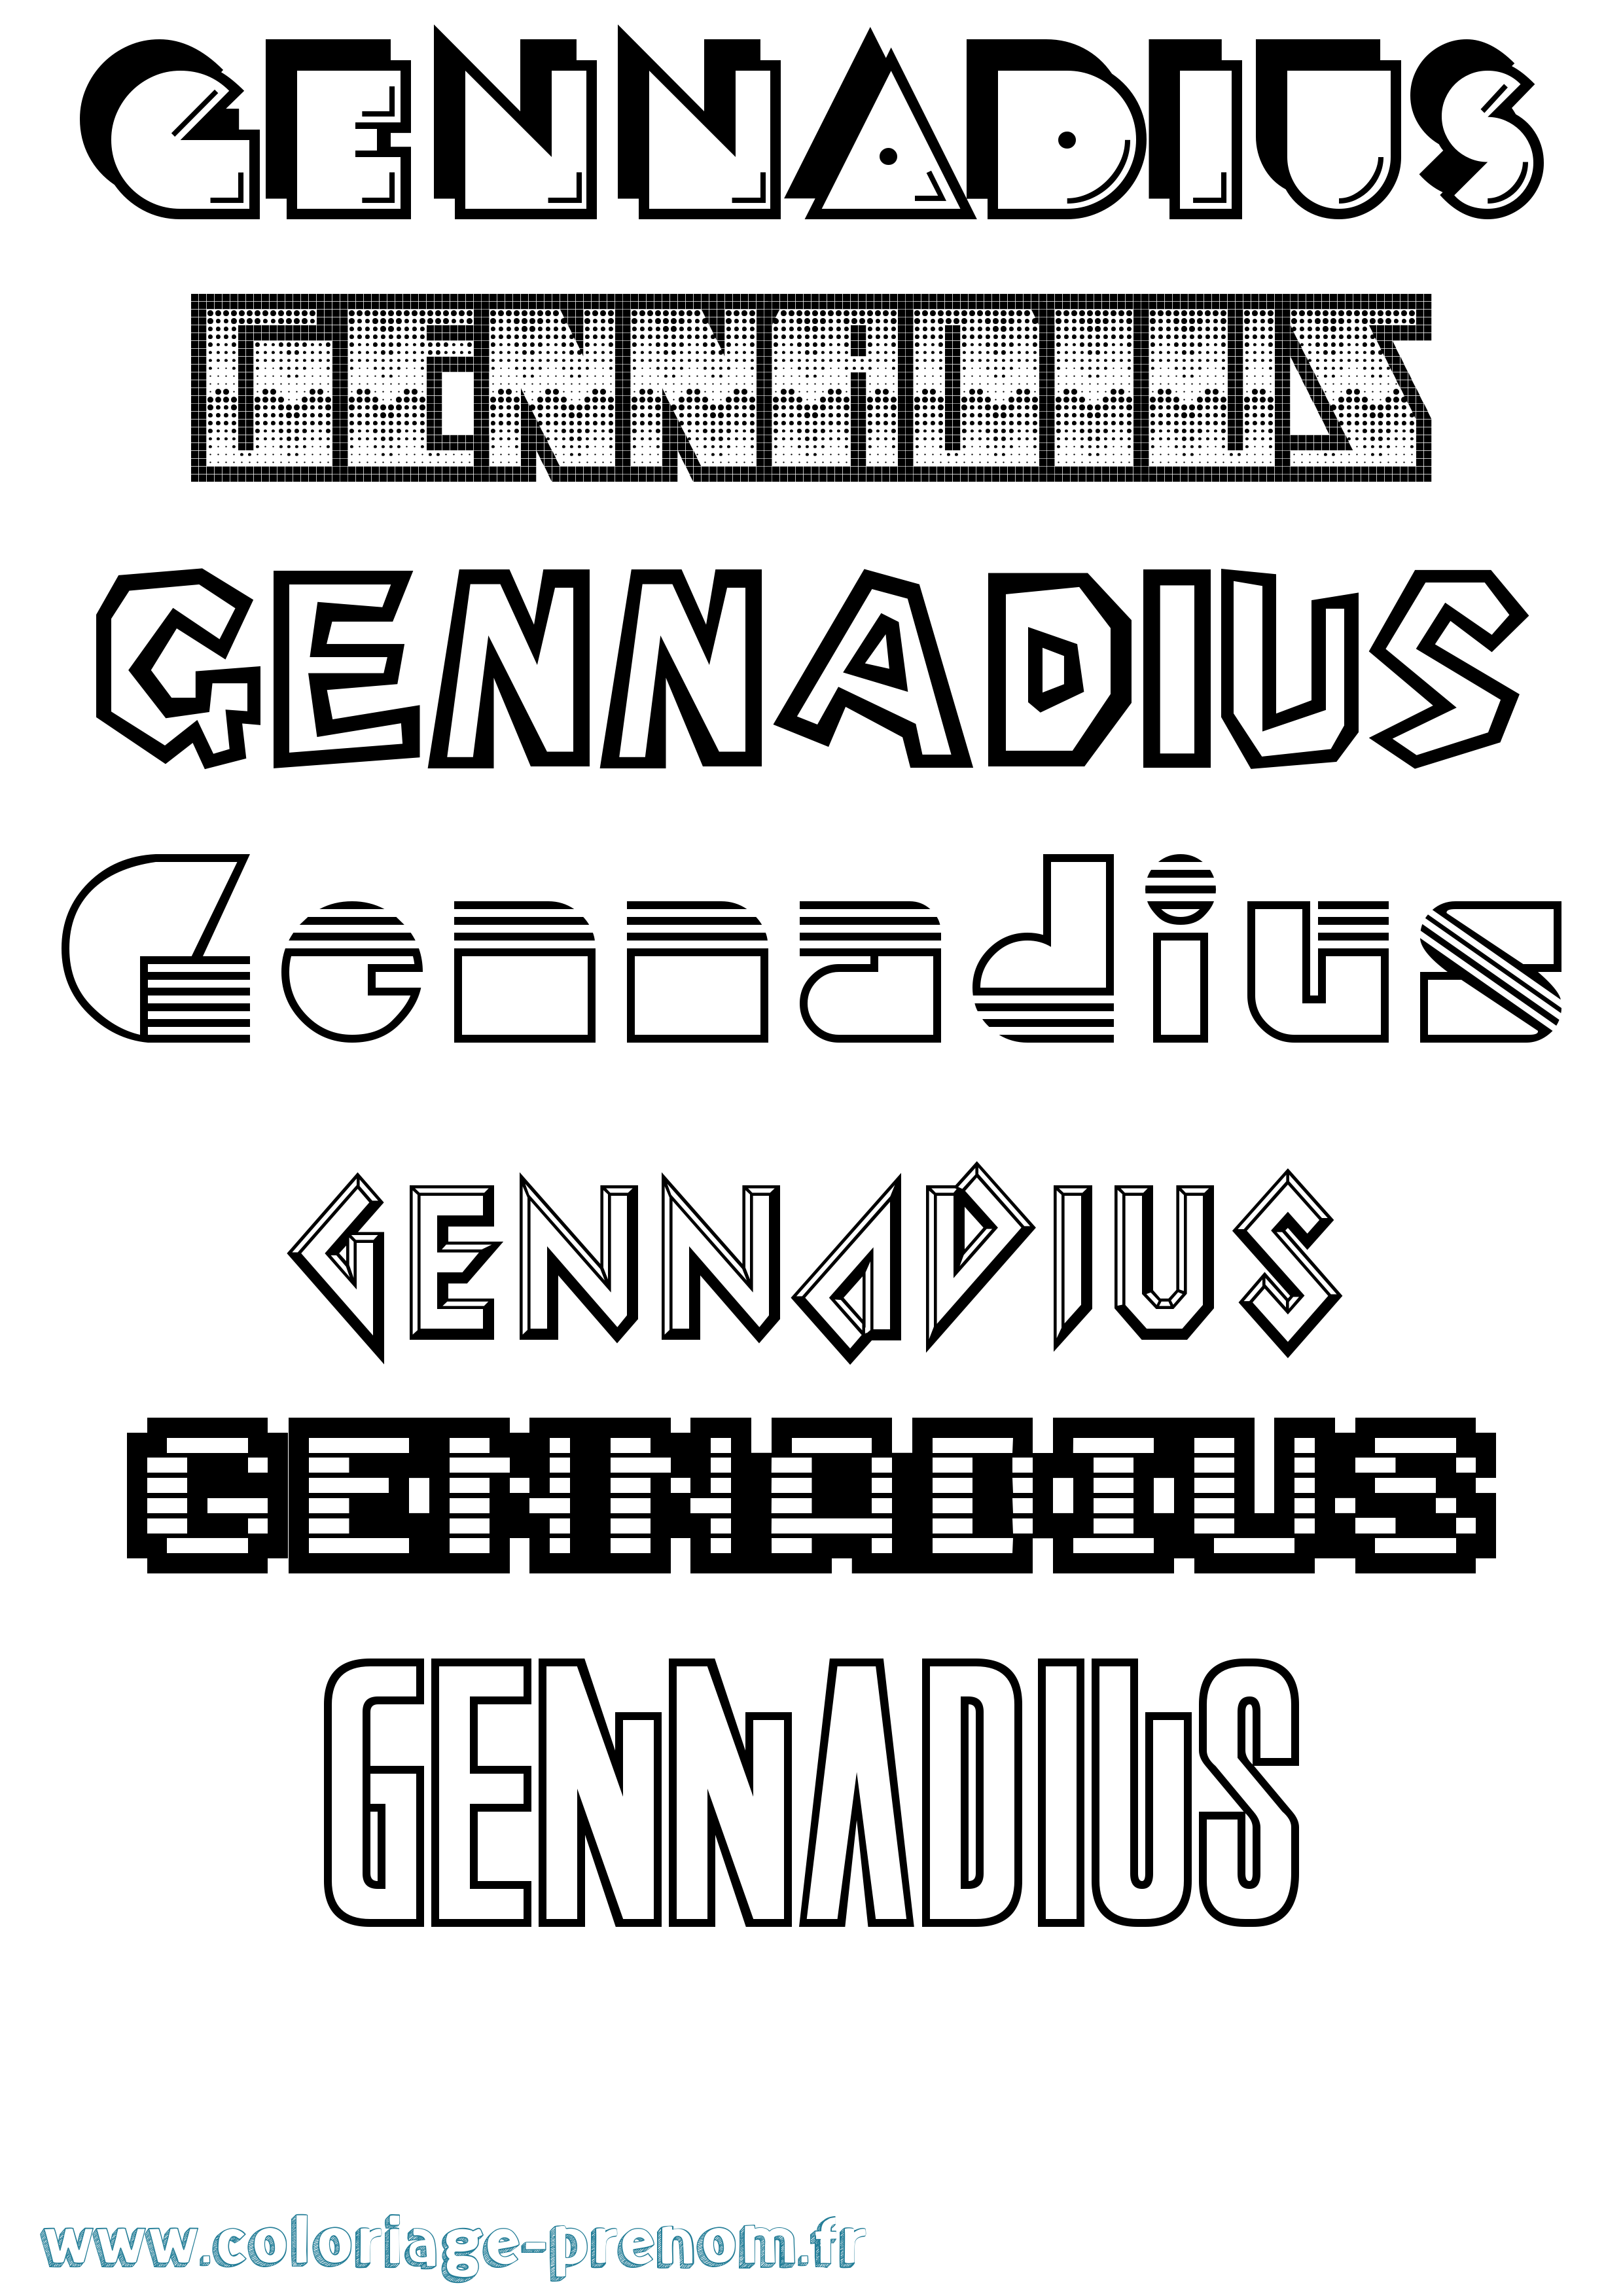 Coloriage prénom Gennadius Jeux Vidéos